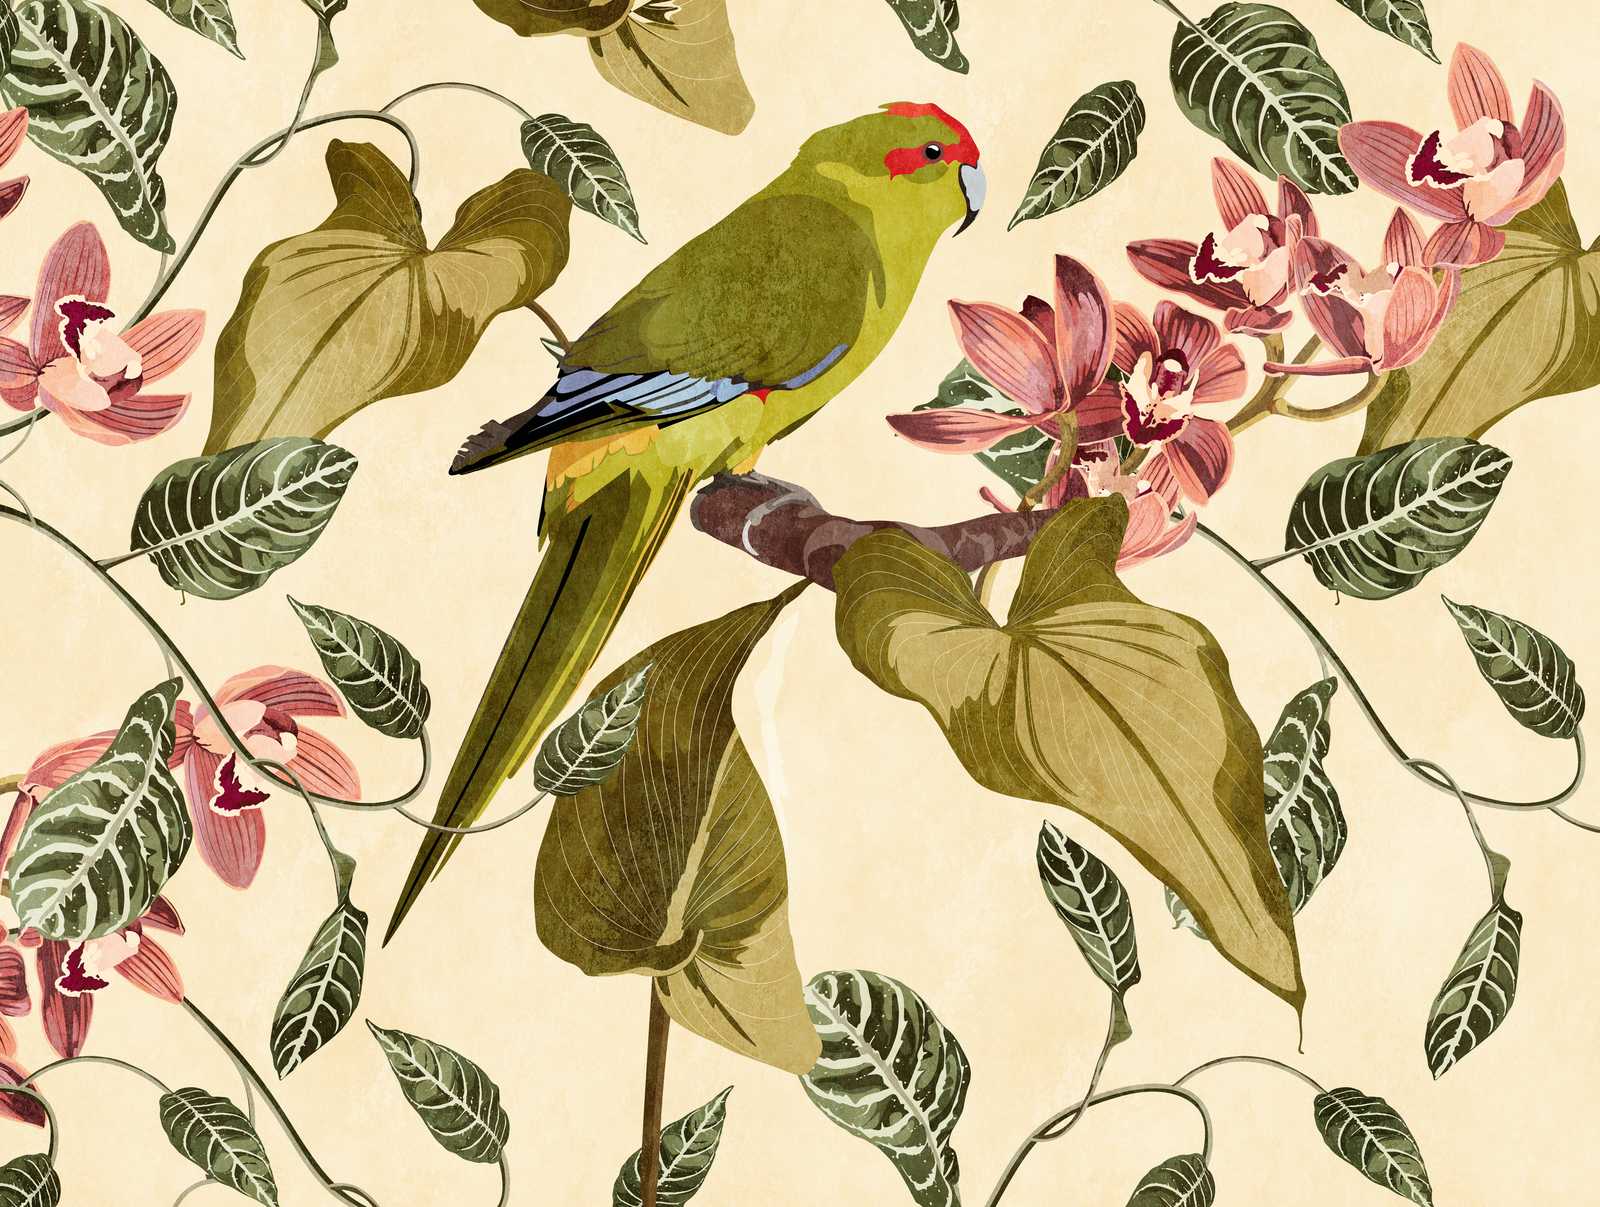             Tapeten Neuheit – Motivtapete Papagei & Orchideen Kunstdruck
        